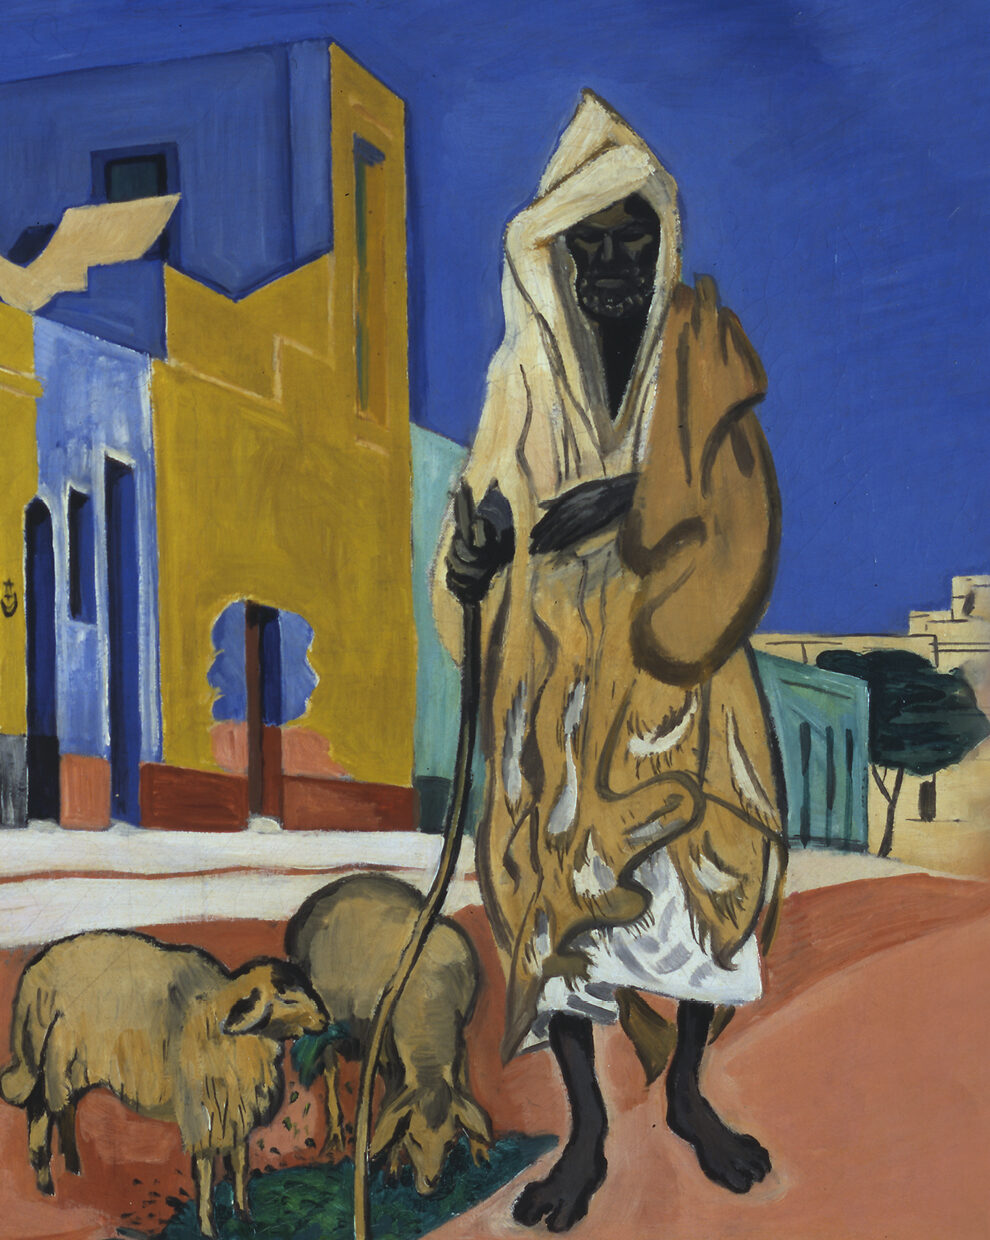 Et maleri af en tunesisk mand iført traditionel klædedragt på en baggrund af blå og jordfarver. Der er to får ved hans fødder og bygninger i baggrunden.